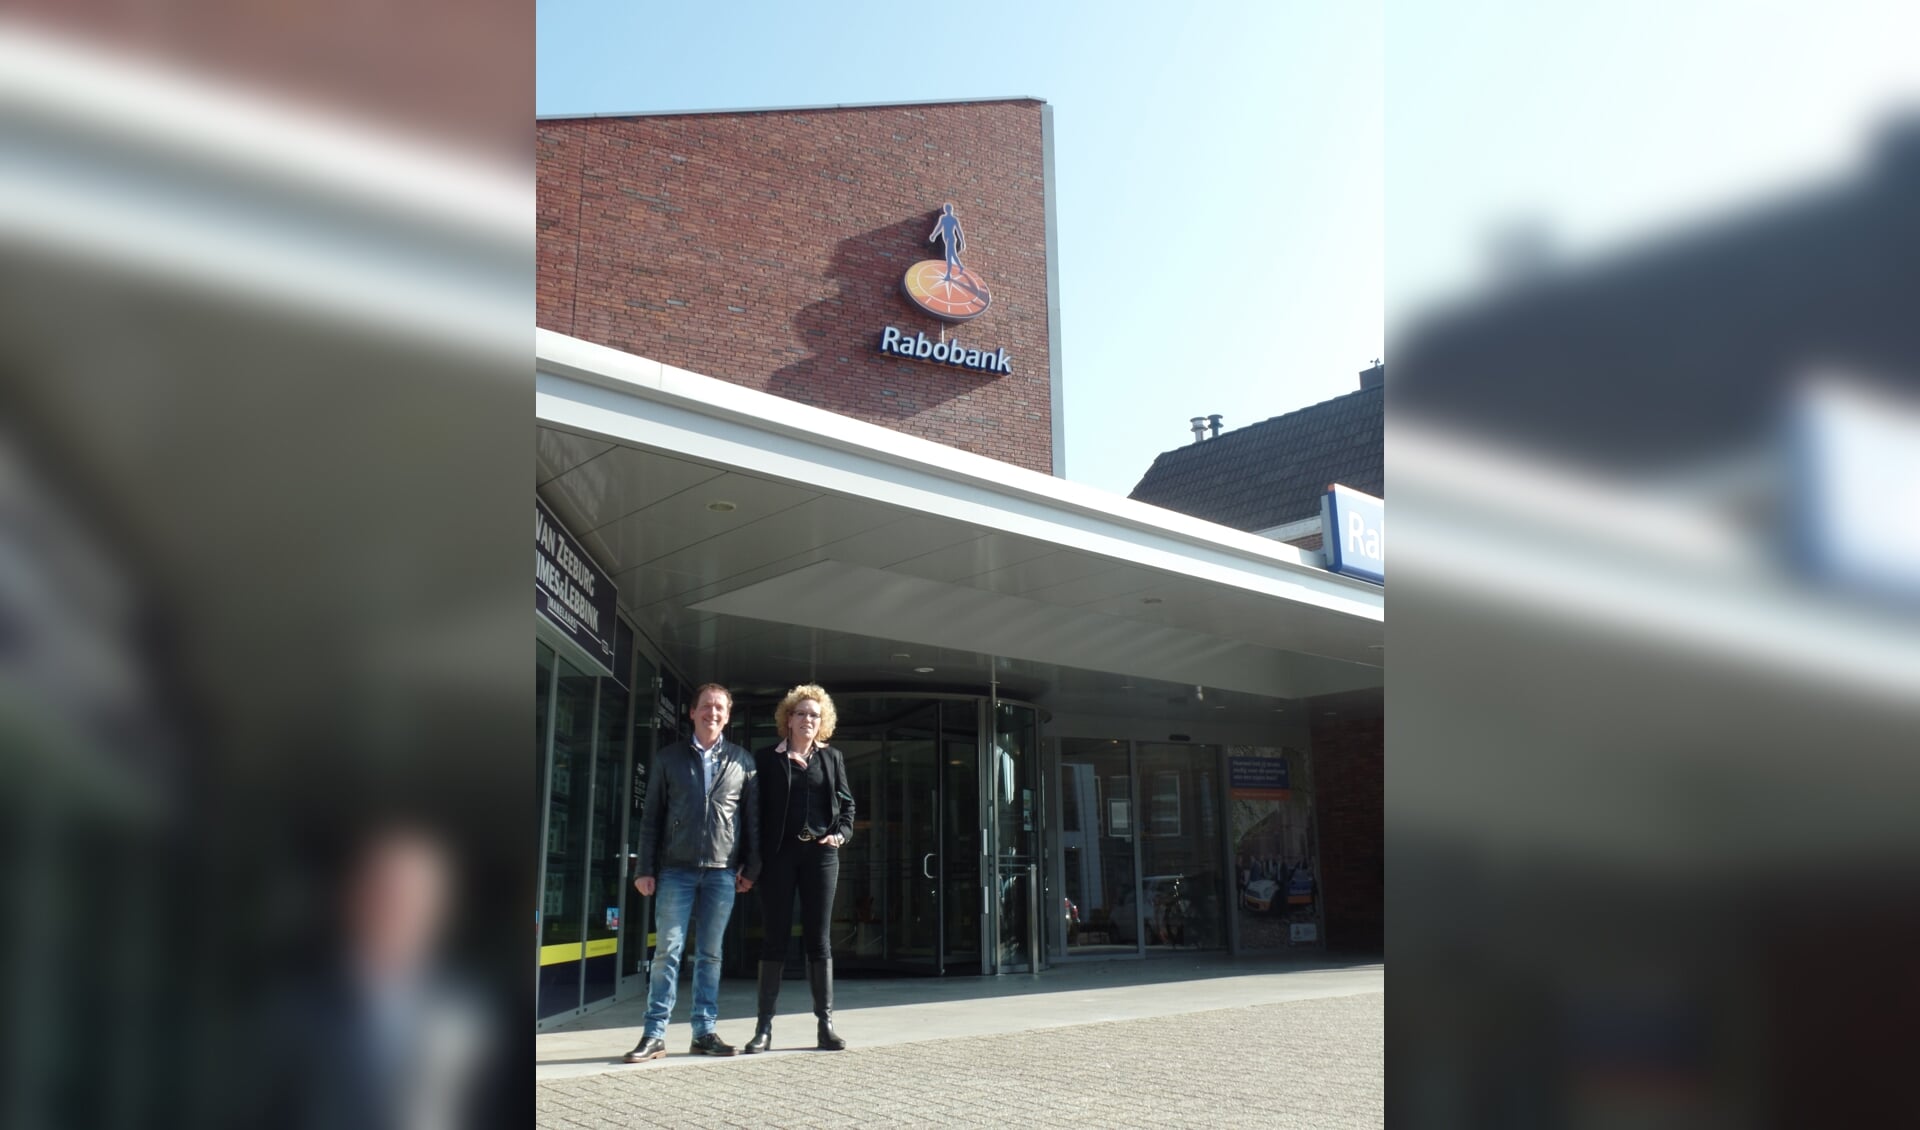 Met de koop van het Rabobank pand gaat voor Monique en John van der Voort een langgekoesterde wens in vervulling. Foto: Jan Hendriksen